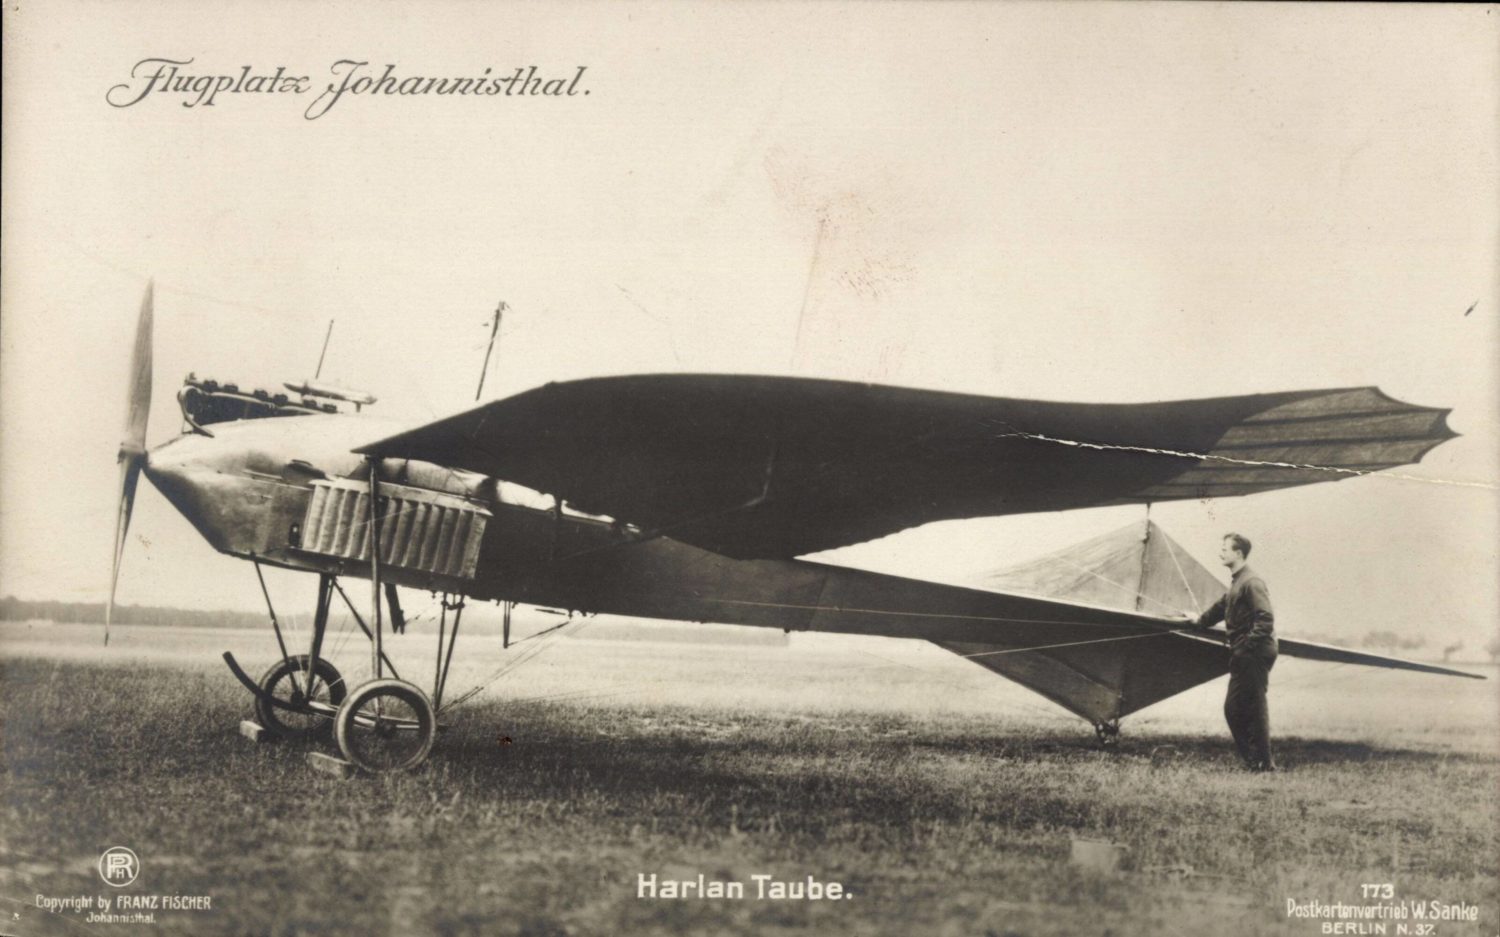 Ein historisches Flugzeug auf dem Flugplatz in Johannisthal.  